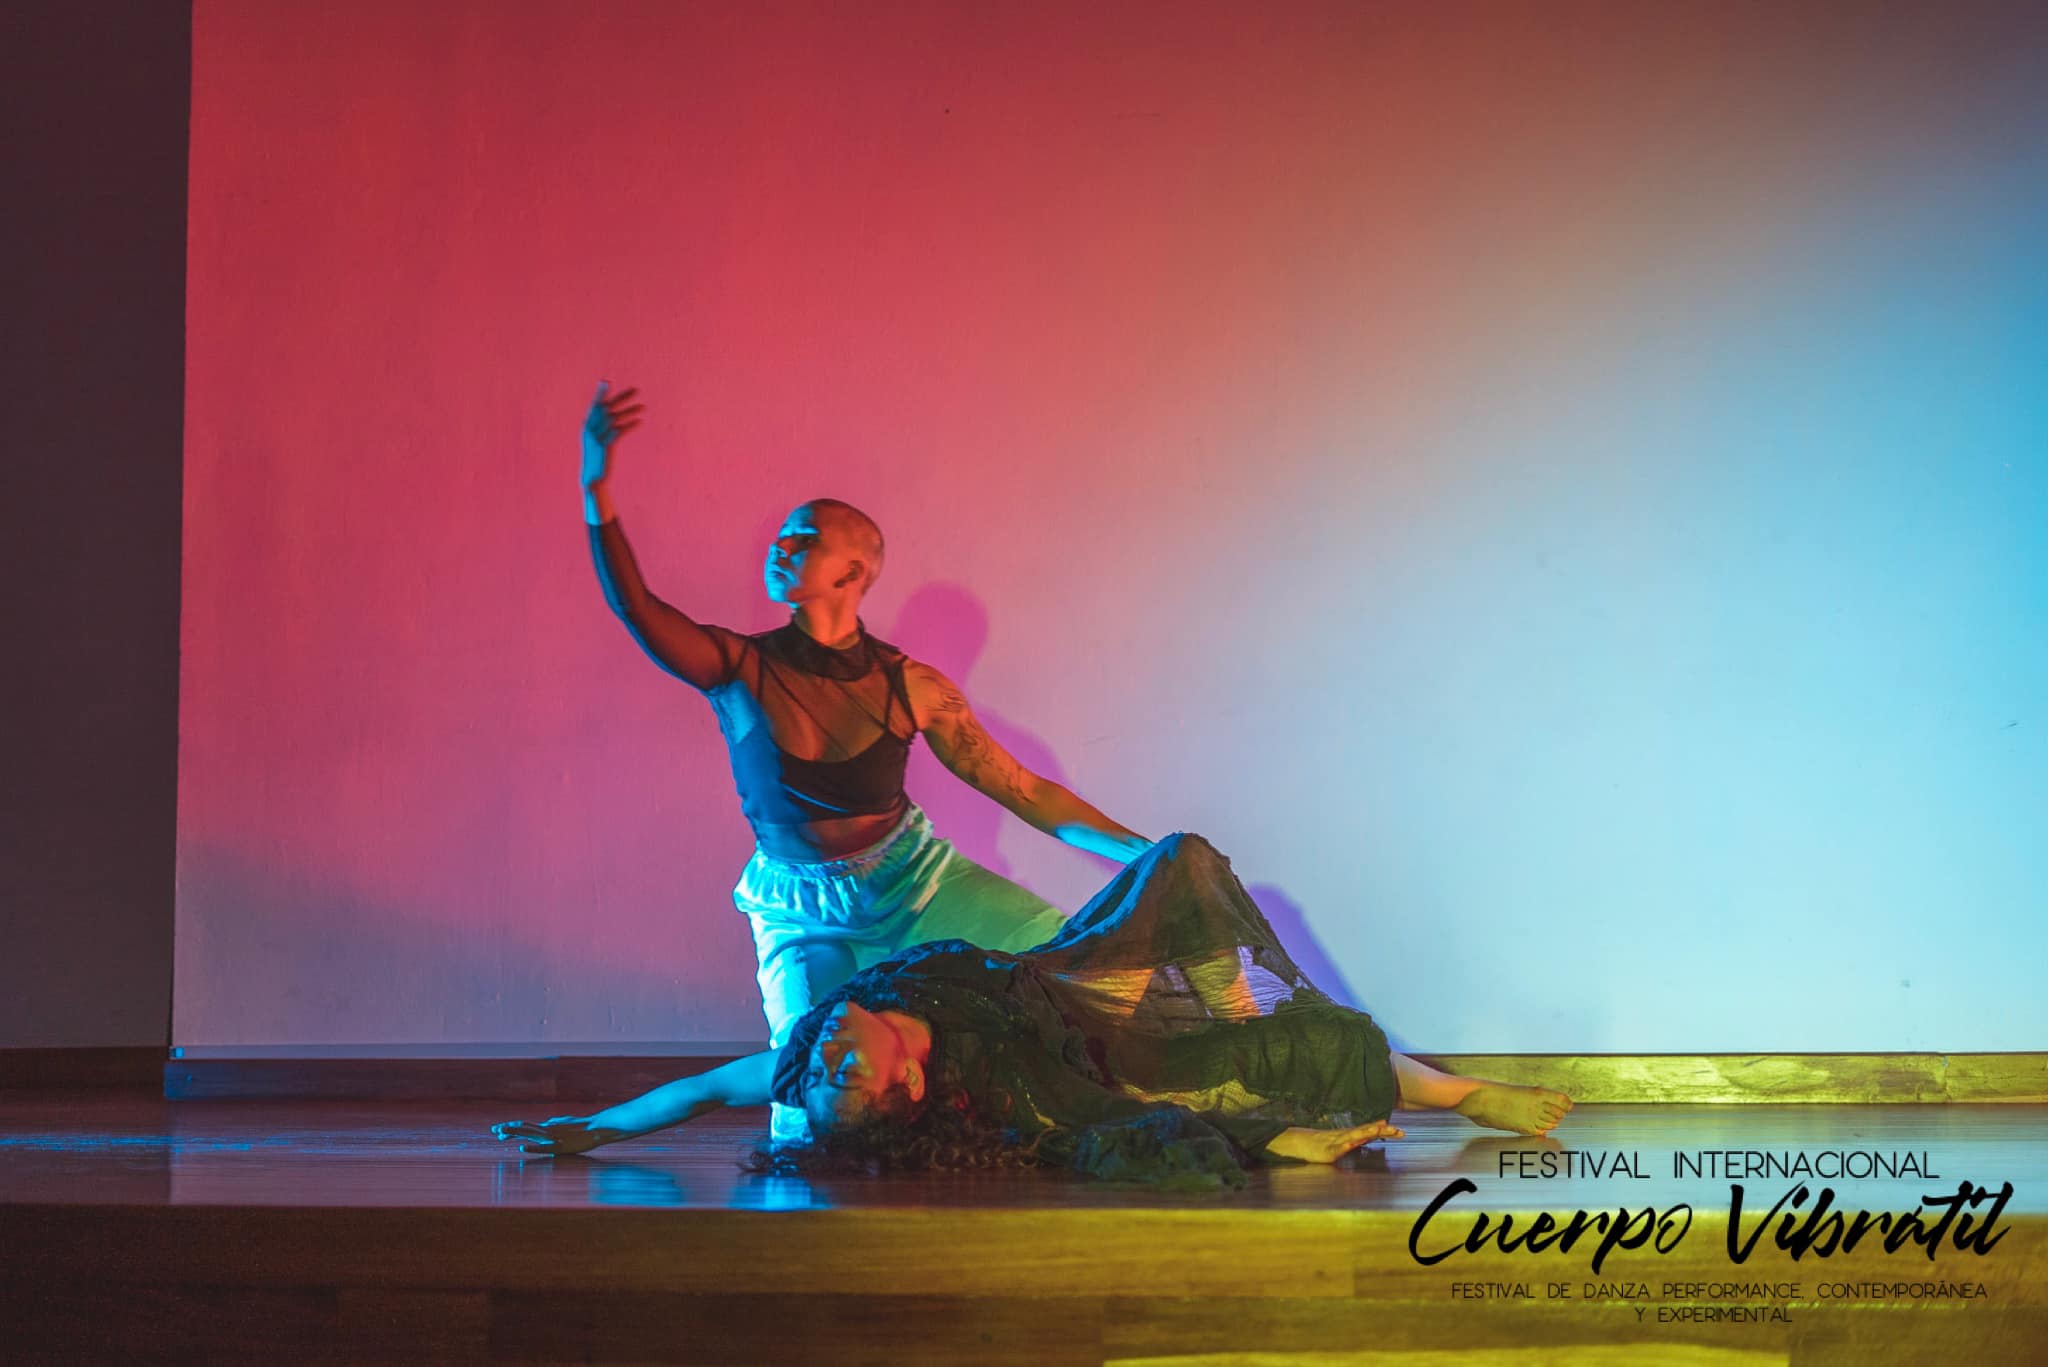 festival de danza performance contemporánea y experimental, proyecto ganador en la categoría festivales de danza con larga trayectoria en la ciudad de Ibagué 2023. 